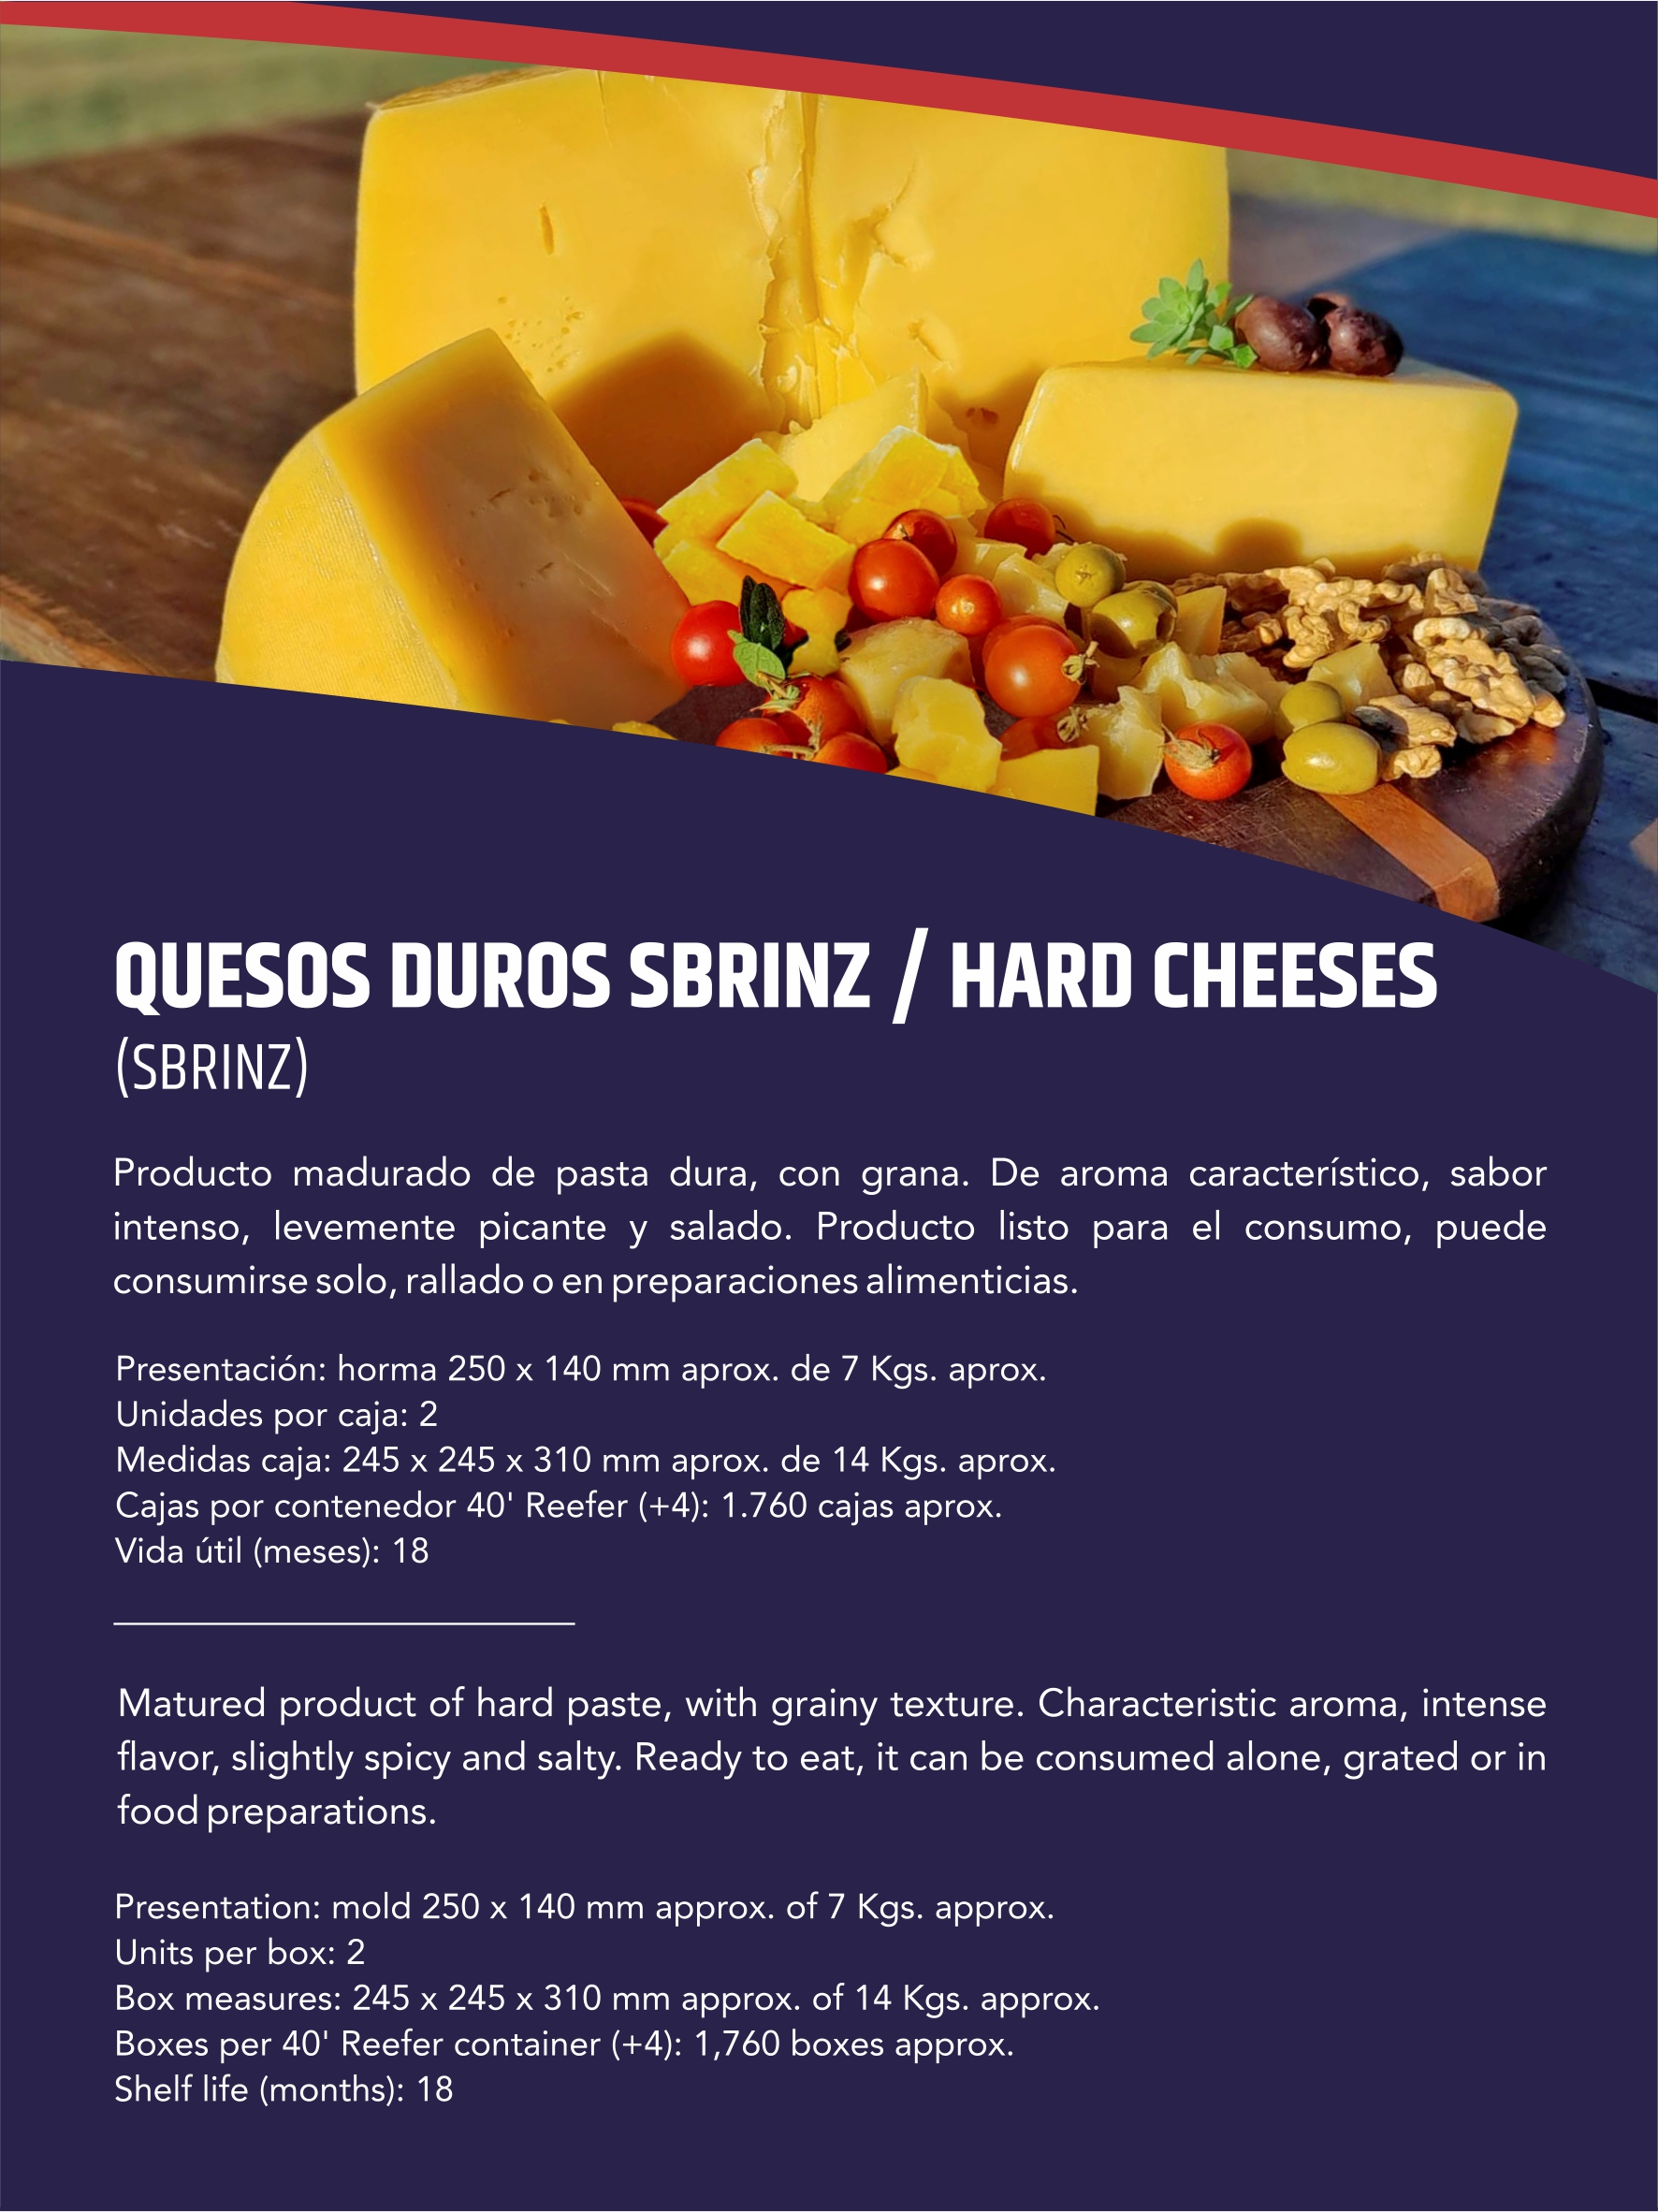 Quesos Duros Sbrnz / HARD CHEESES